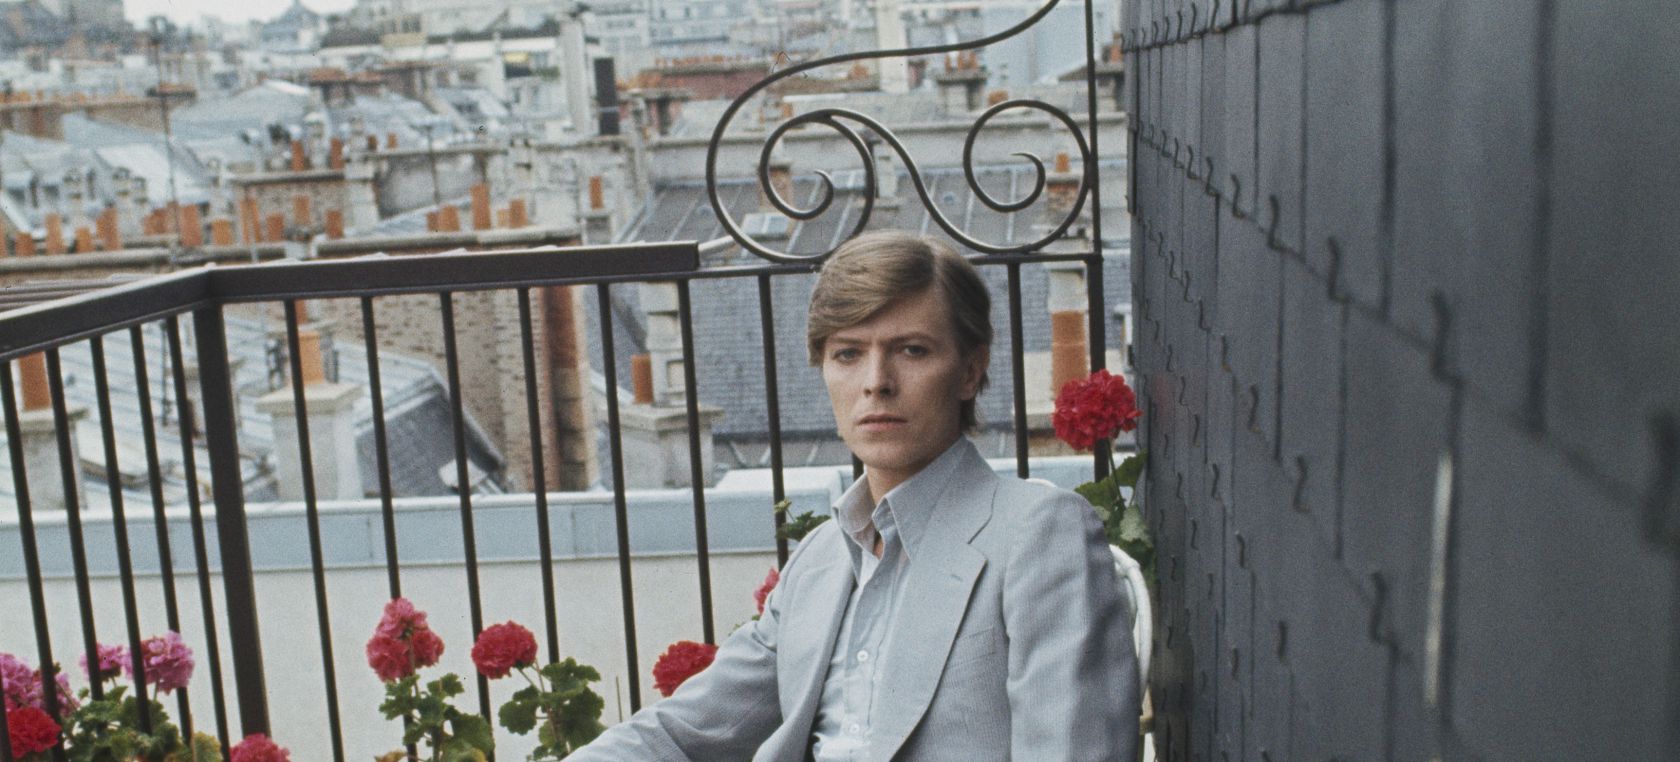 La historia de ‘Heroes’, la canción de David Bowie que ayudó a derribar el Muro de Berlín